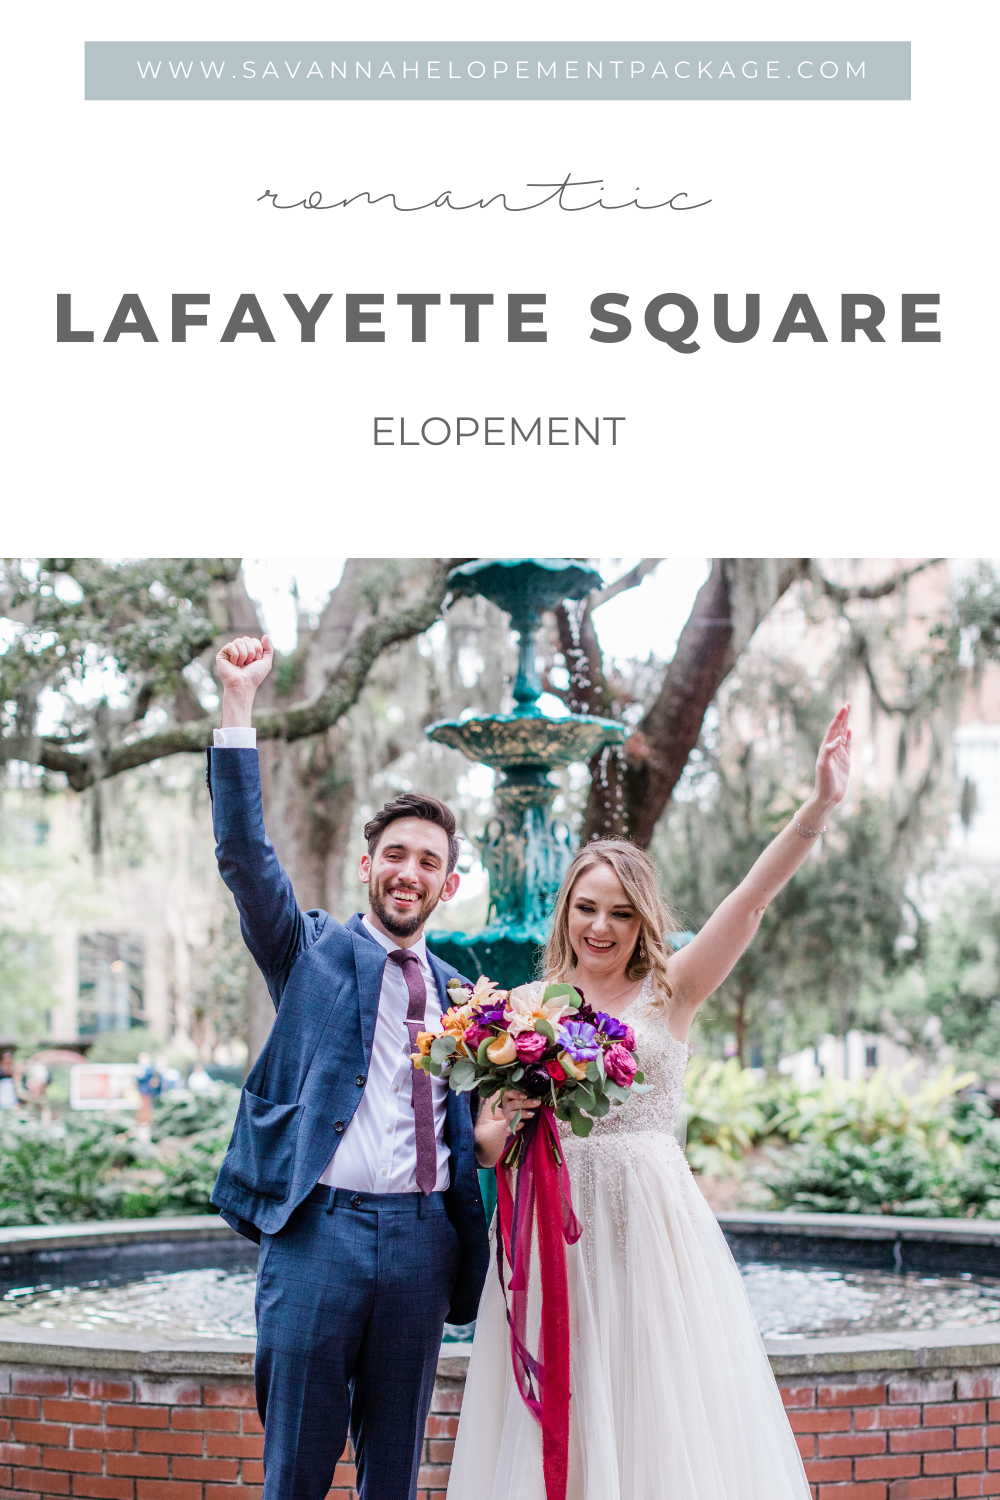 Savannah Elopement Package - Lafayette Square